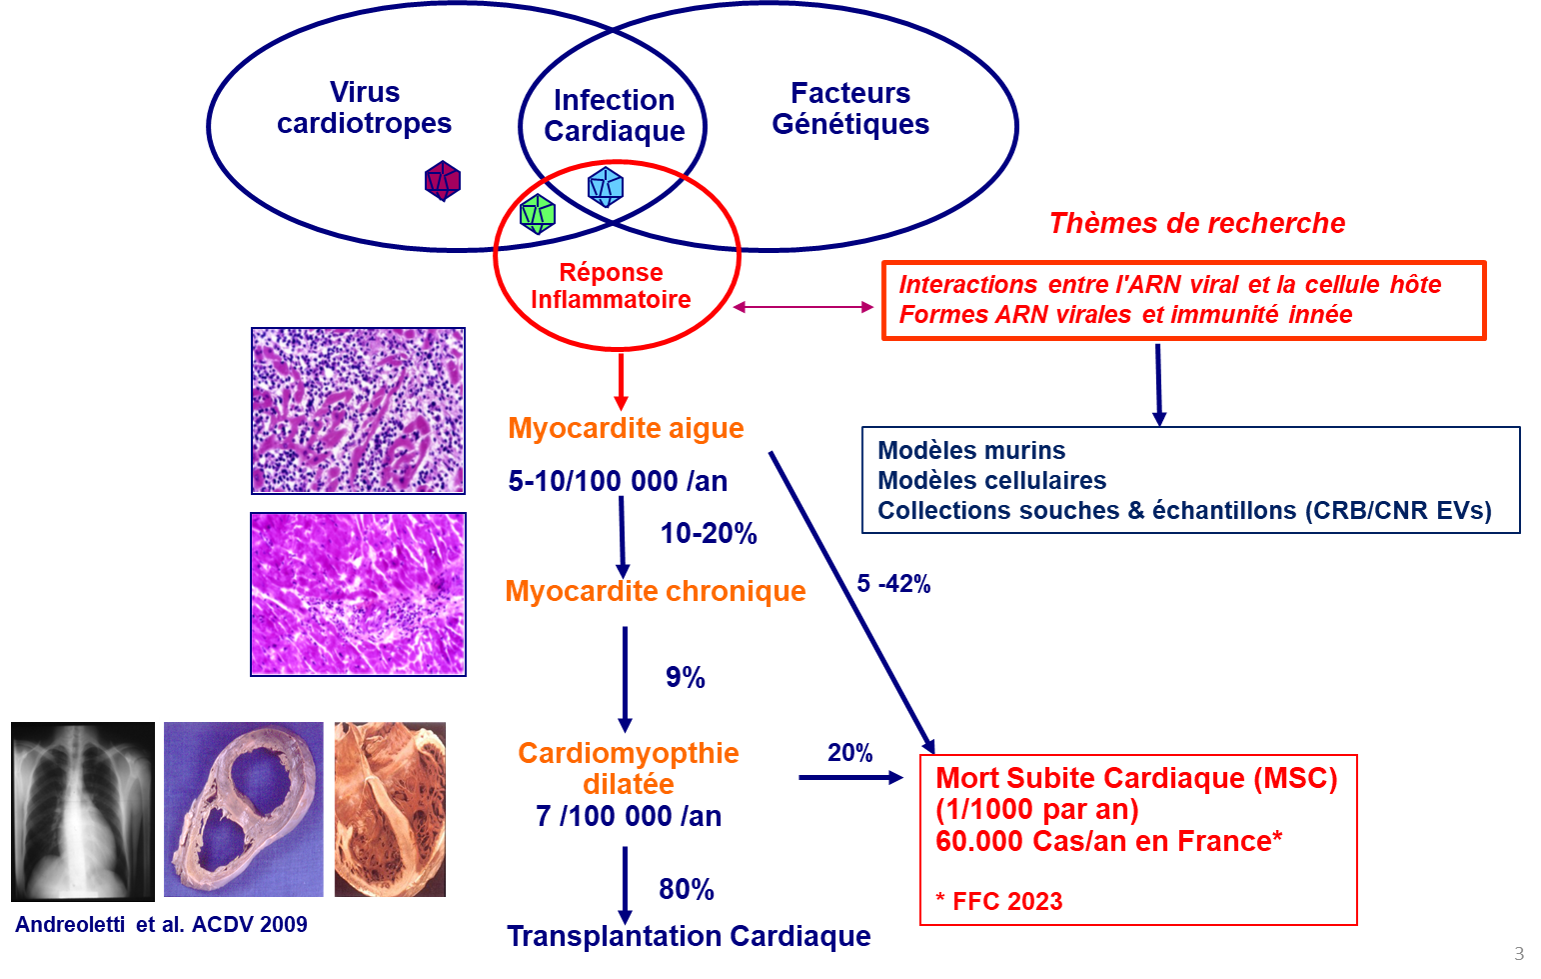 Infections cardiovasculaires virales et réponse inflammatoire chez l'homme